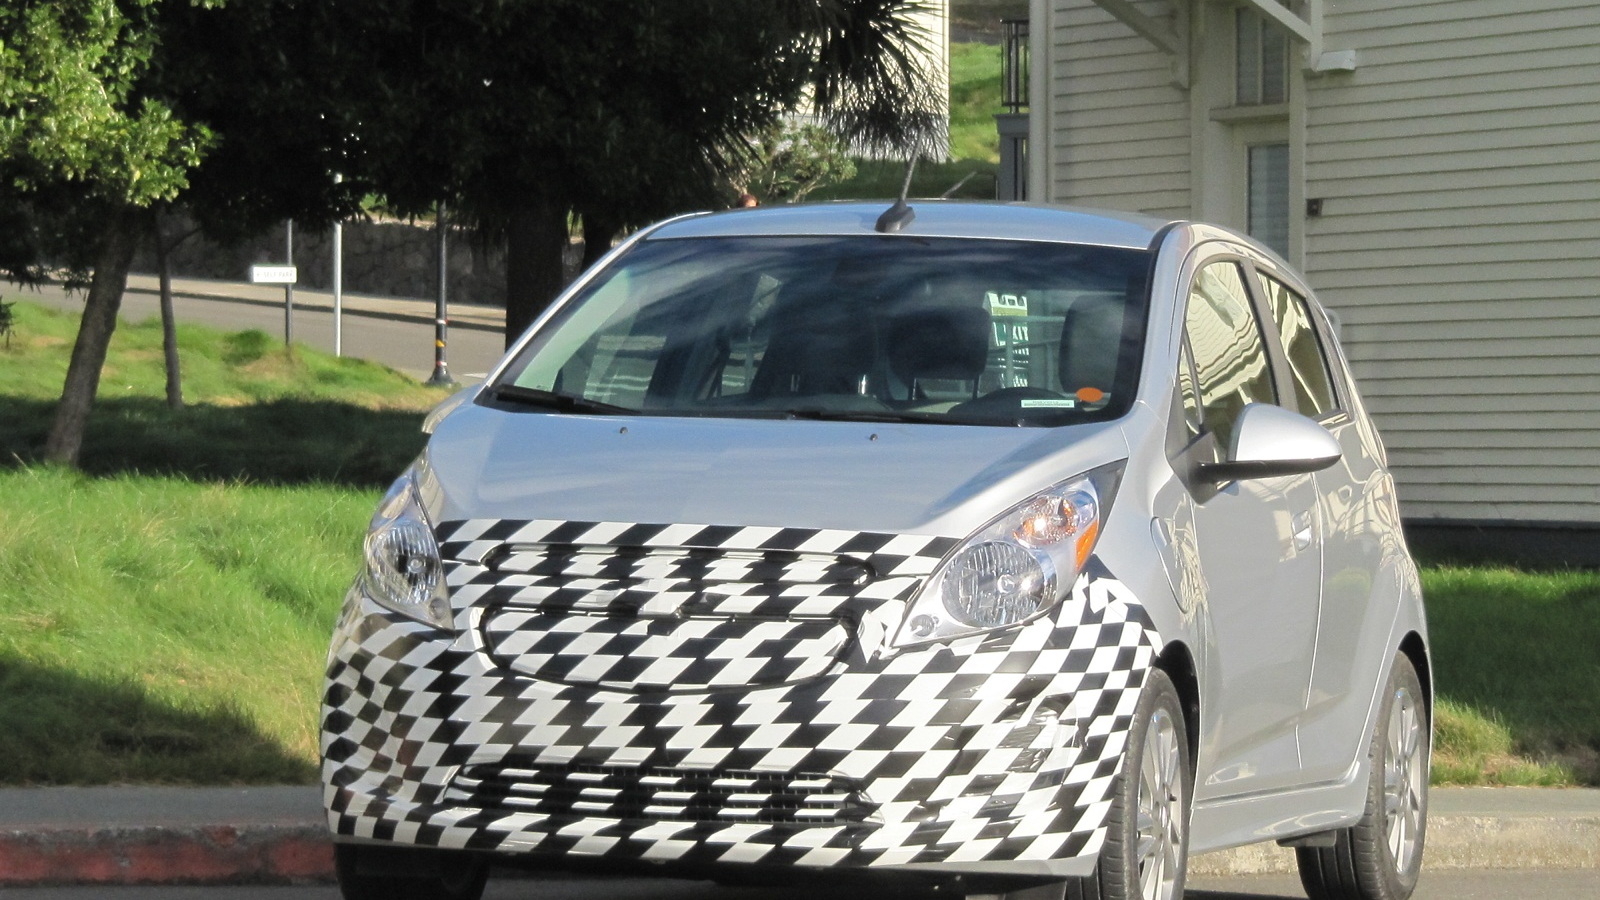 2014 Chevrolet Spark EV prototype, Sausalito, CA, Nov 2012